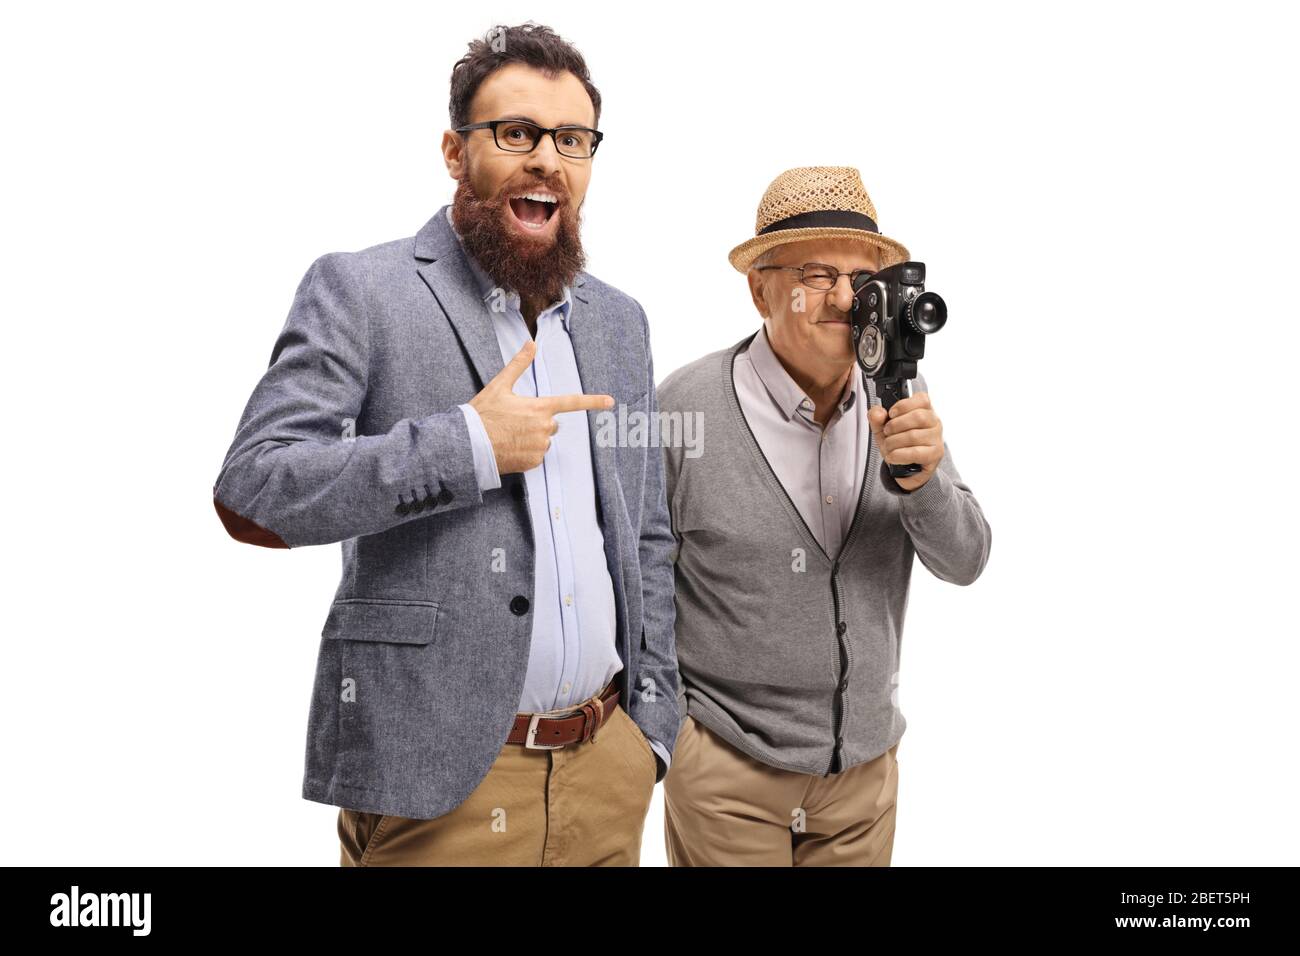 Uomo bearded ridendo e puntando ad un Signore anziano con una macchina fotografica d'epoca isolata su sfondo bianco Foto Stock